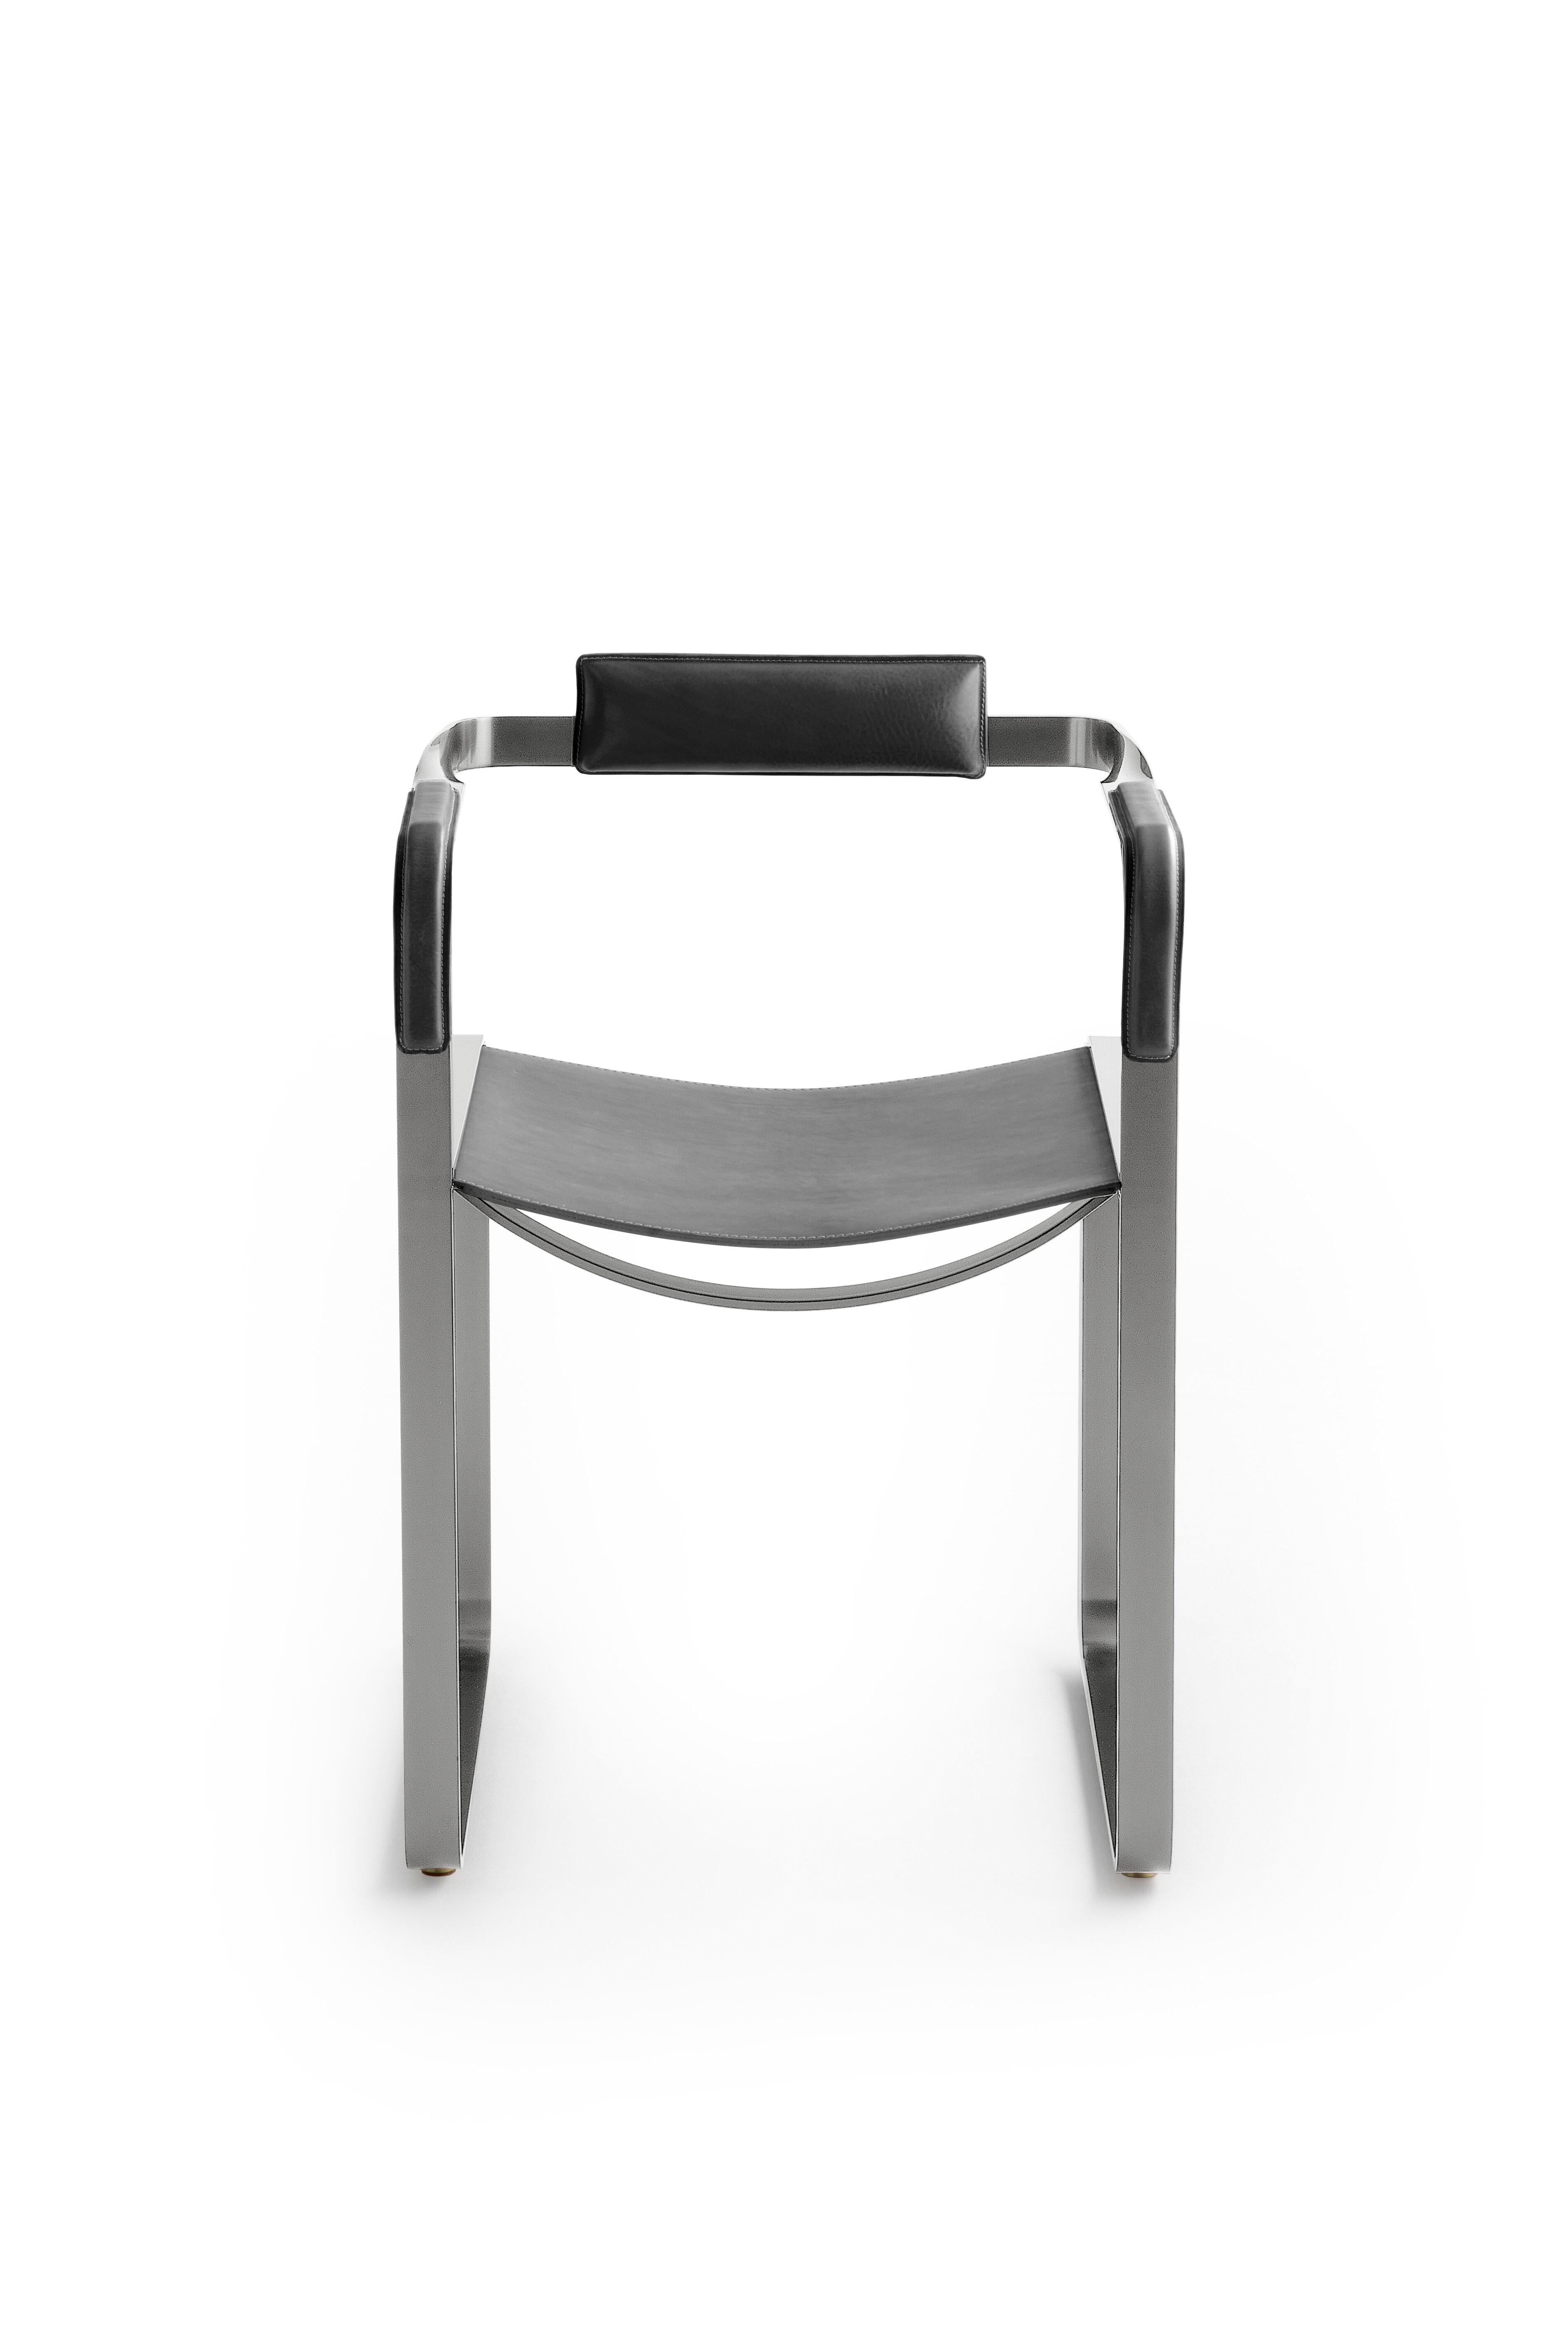 Der zeitgenössische Sessel Wanderlust gehört zu einer Kollektion von minimalistischen und ruhigen Stücken, bei denen sich Exklusivität und Präzision in kleinen, auf den ersten Blick unscheinbaren Details wie den handgedrehten Metallmuttern und